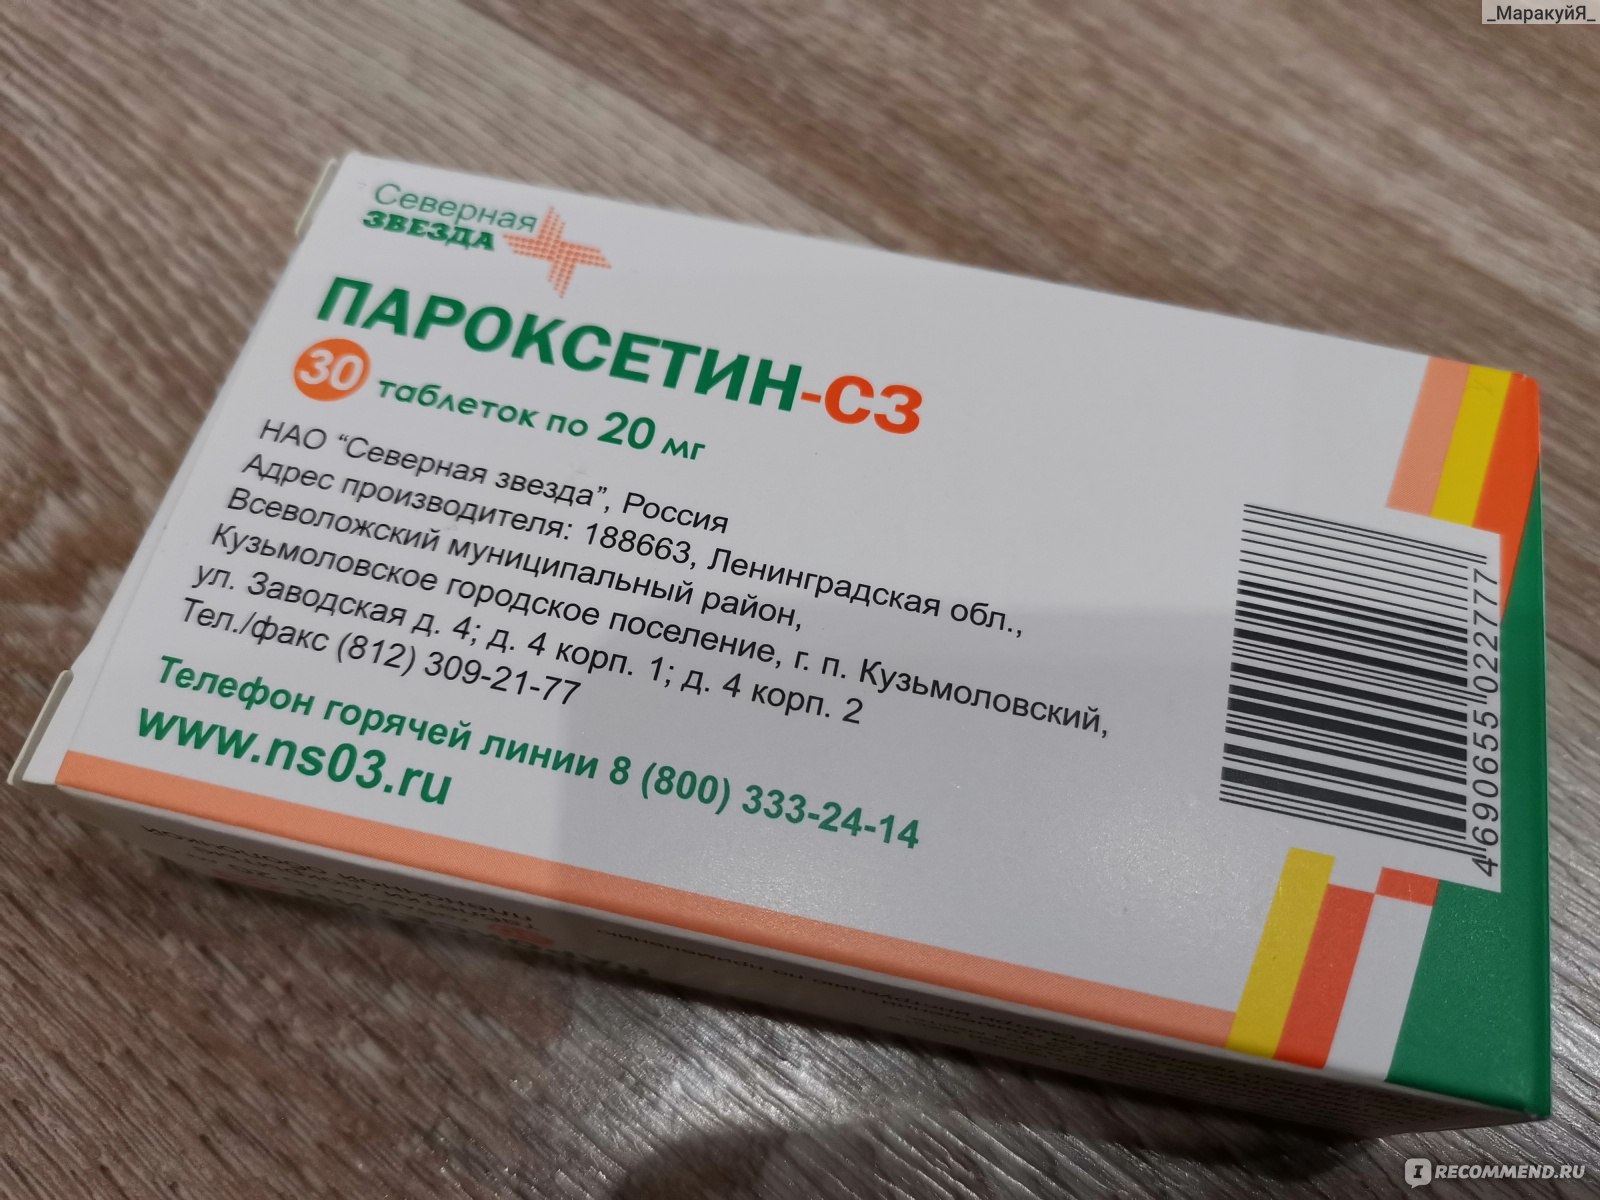 Антидепрессант Пароксетин-СЗ (Северная звезда) - «Неудачный российский .